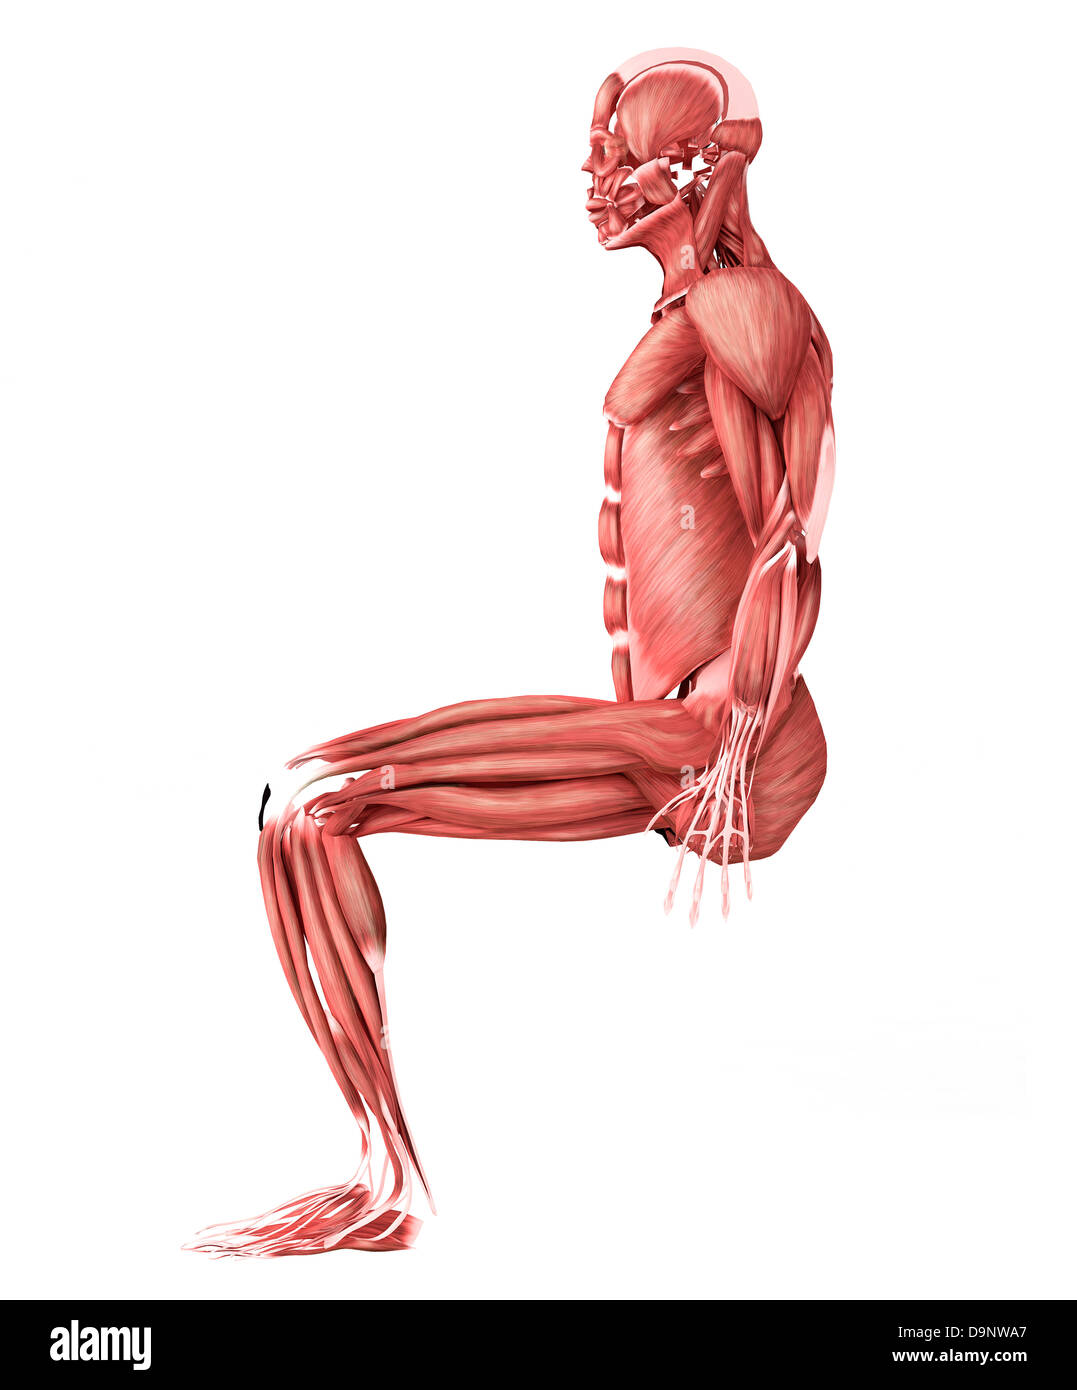 Medizinische Illustration der männlichen Muskeln in einer sitzenden Position, Seitenansicht. Stockfoto